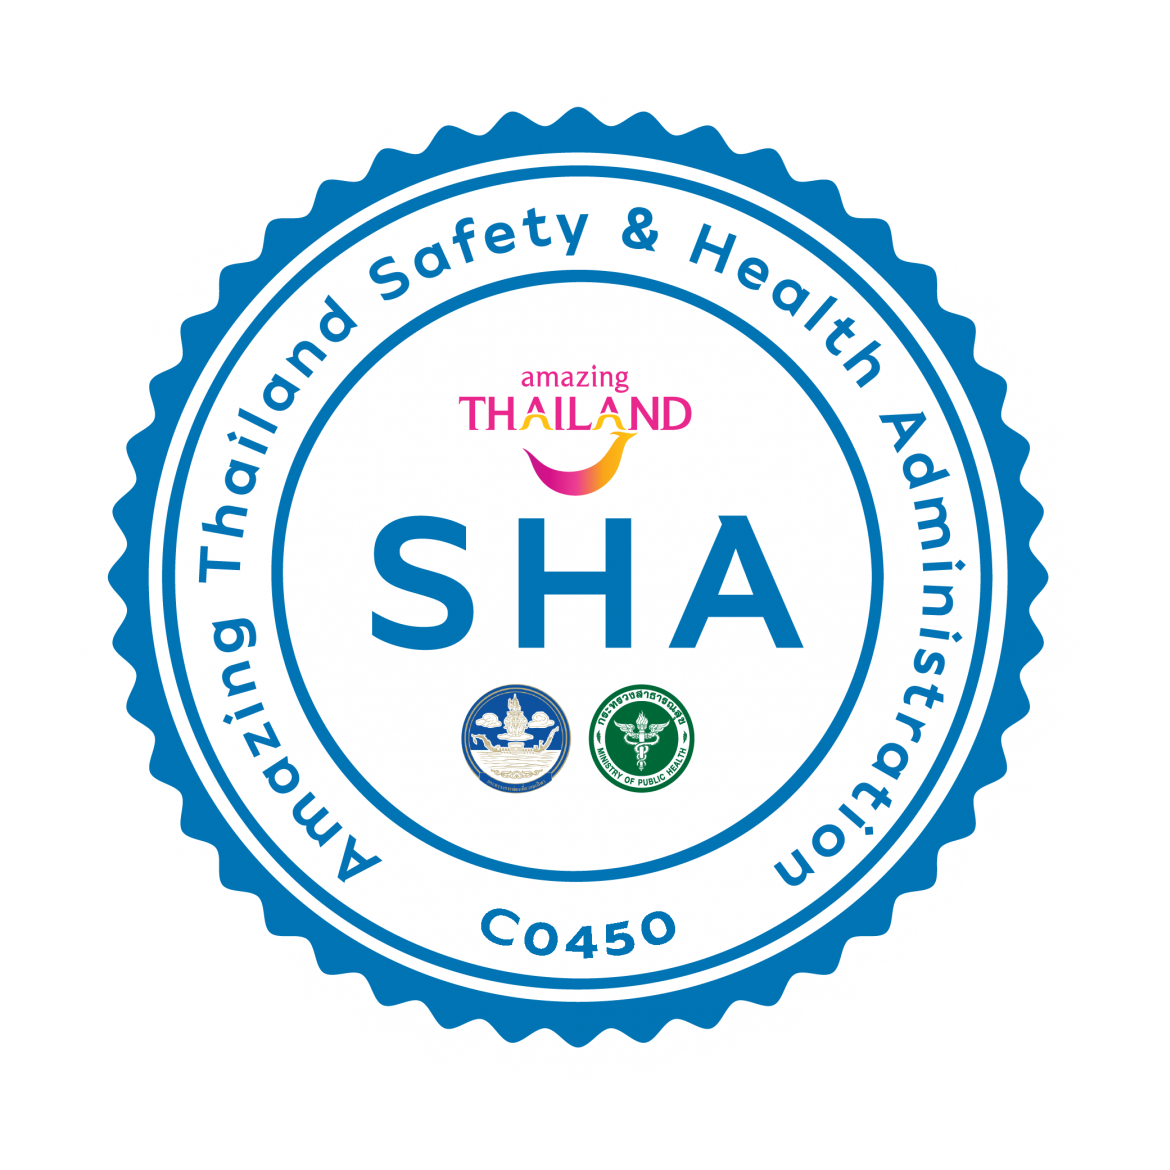 พิพิธภัณฑ์เรือนโบราณล้านนา มช. ได้รับตราสัญลักษณ์มาตรฐานความปลอดภัยด้านสุขอนามัย (Amazing Thailand Safety & Health: SHA) ยกระดับมาตรฐานการให้บริการและสร้างความมั่นใจให้กับนักท่องเที่ยว